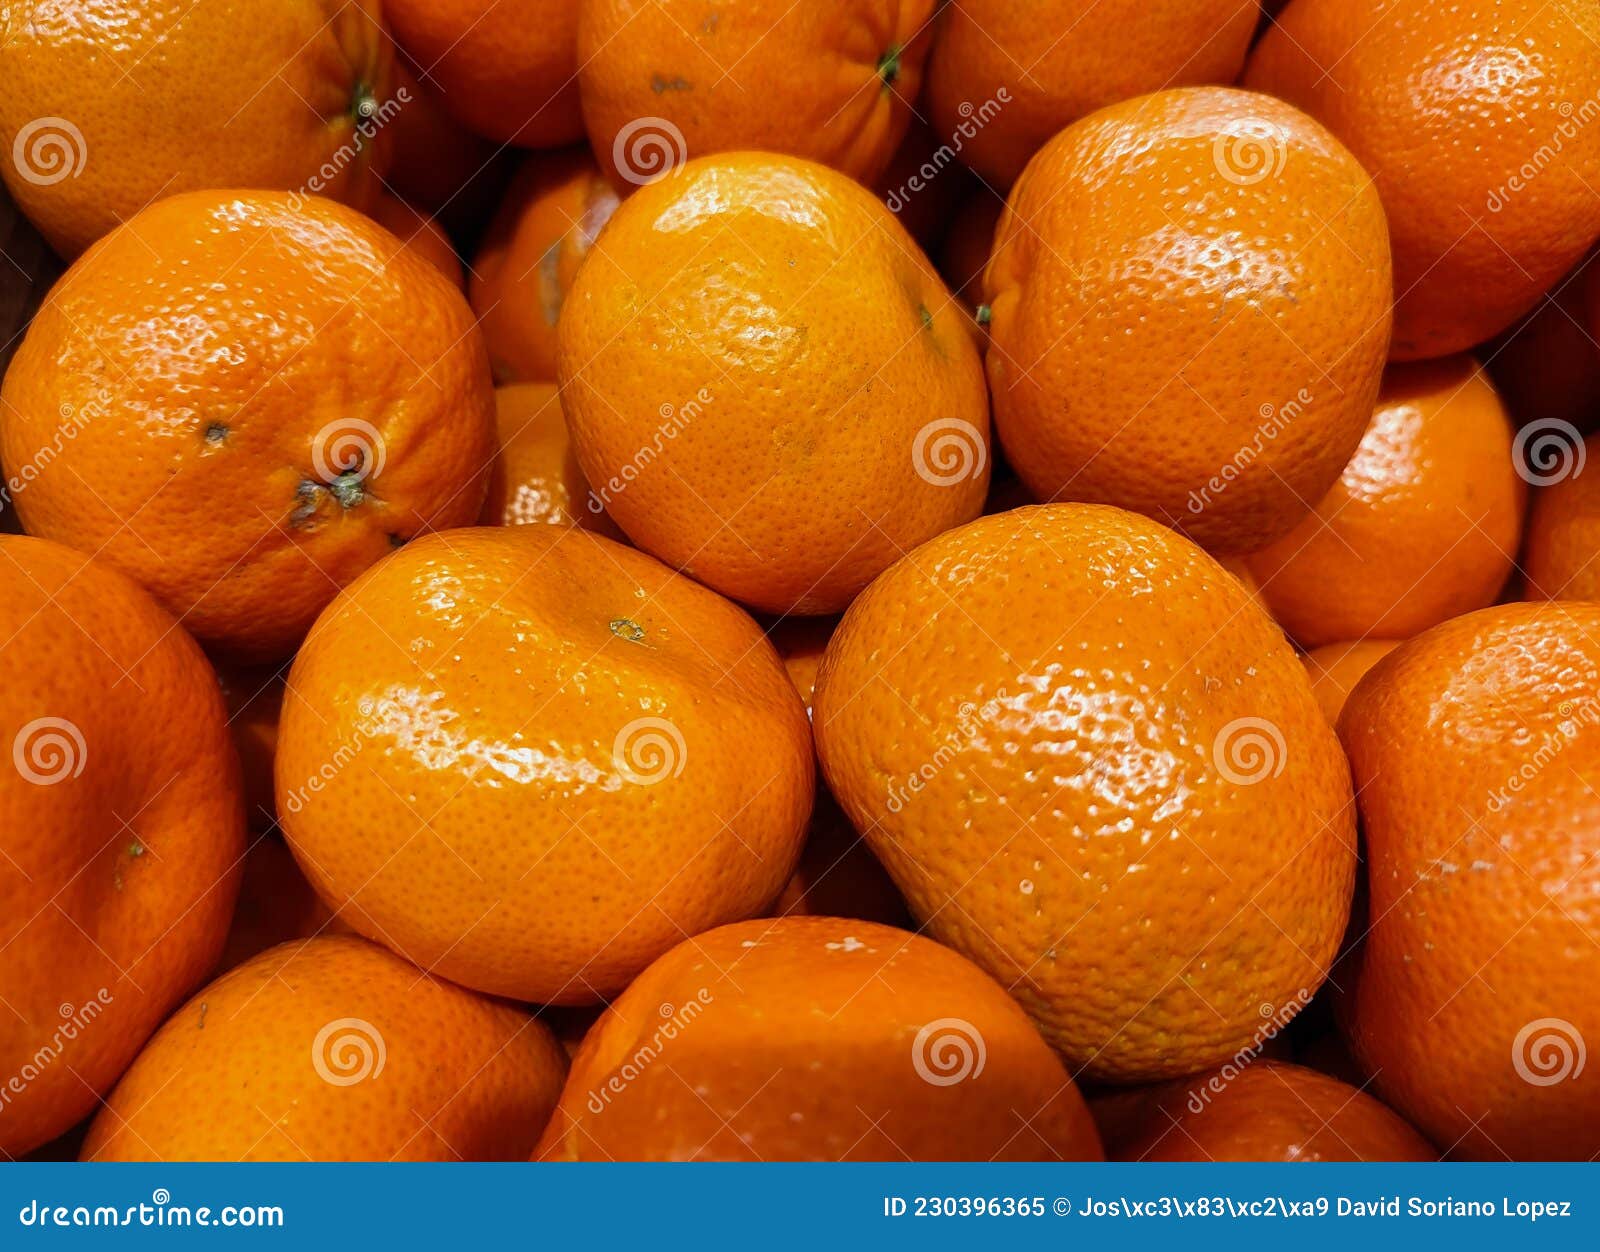 mandarinas en supermercado